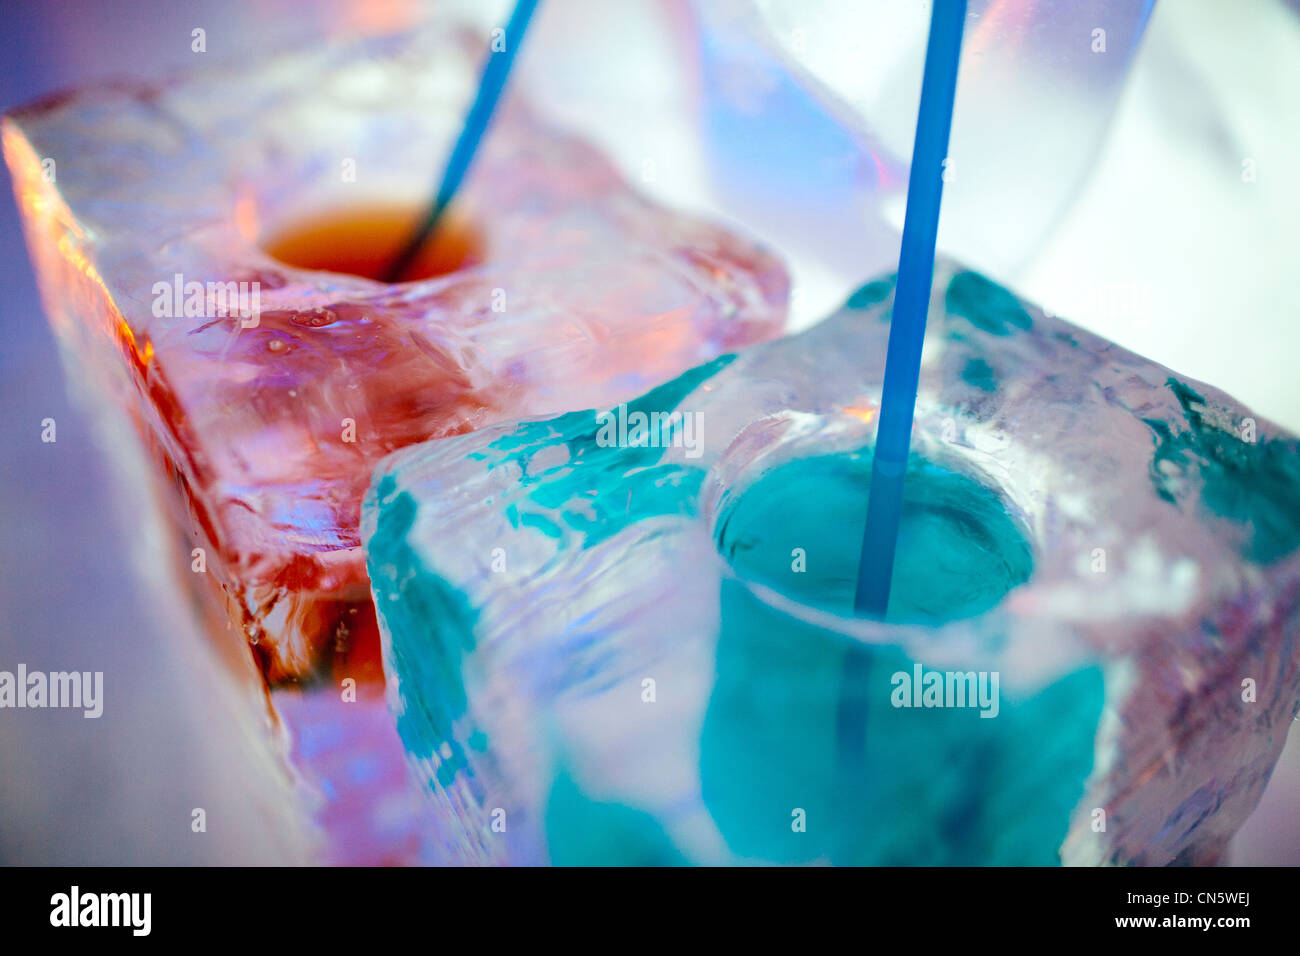 La Corée du Sud, Séoul, Hongdae, Bar de Glace, close-up de verres à cocktail coloré fait de glace Banque D'Images